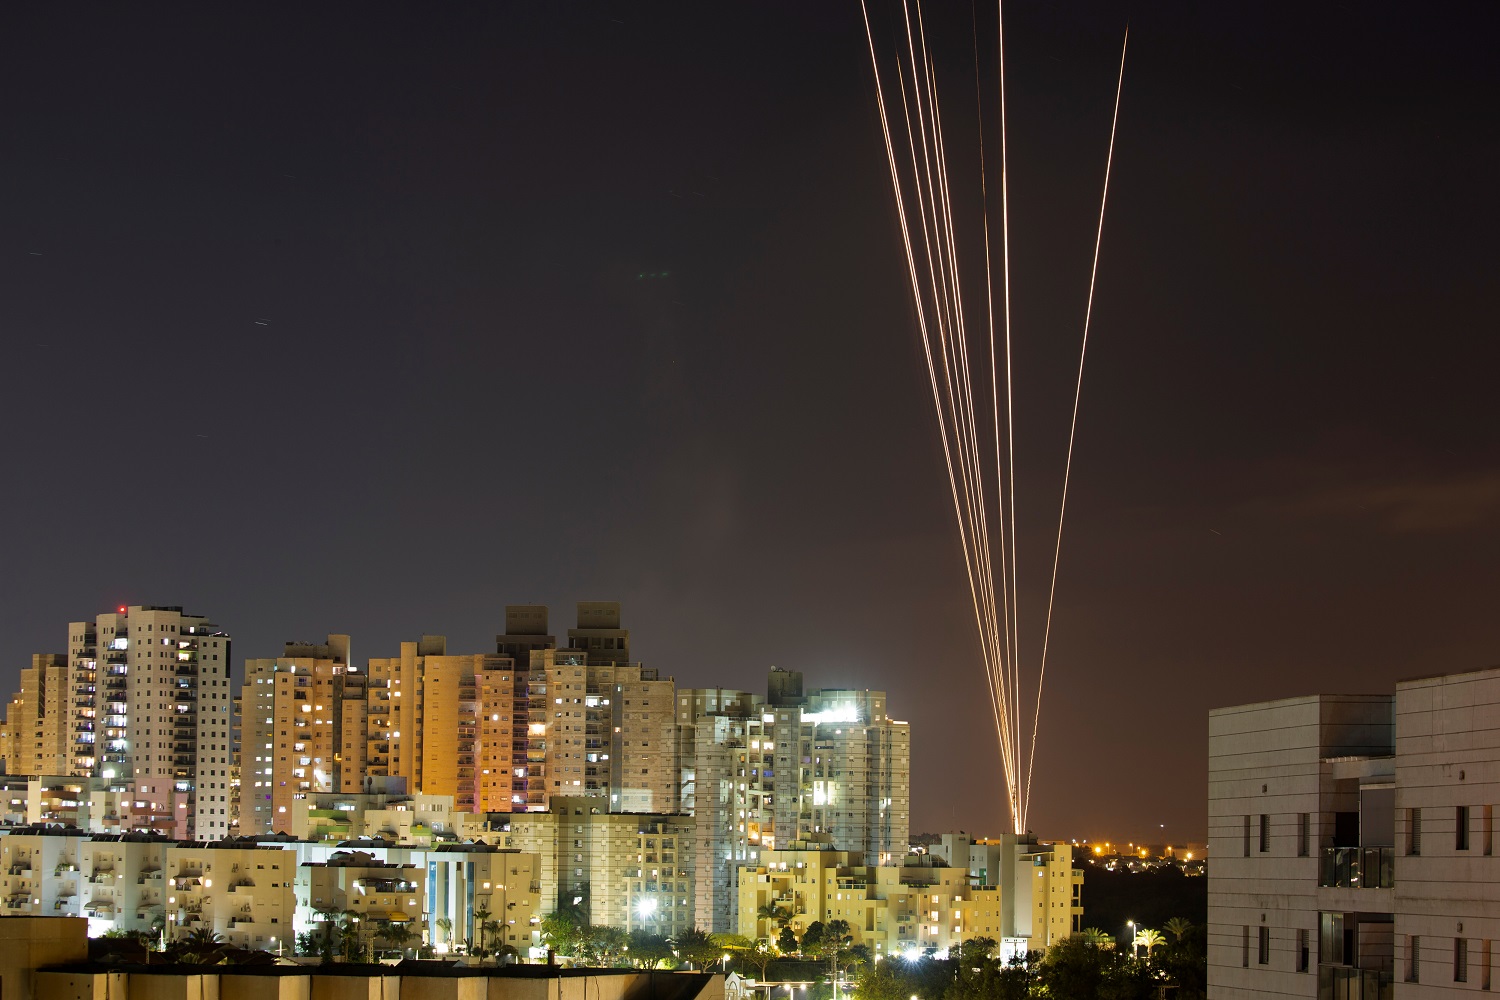 خطوط من الضوء مع إطلاق صواريخ من قطاع غزة باتجاه إسرائيل ،13 أيار/مايو 2021. (رويترز).